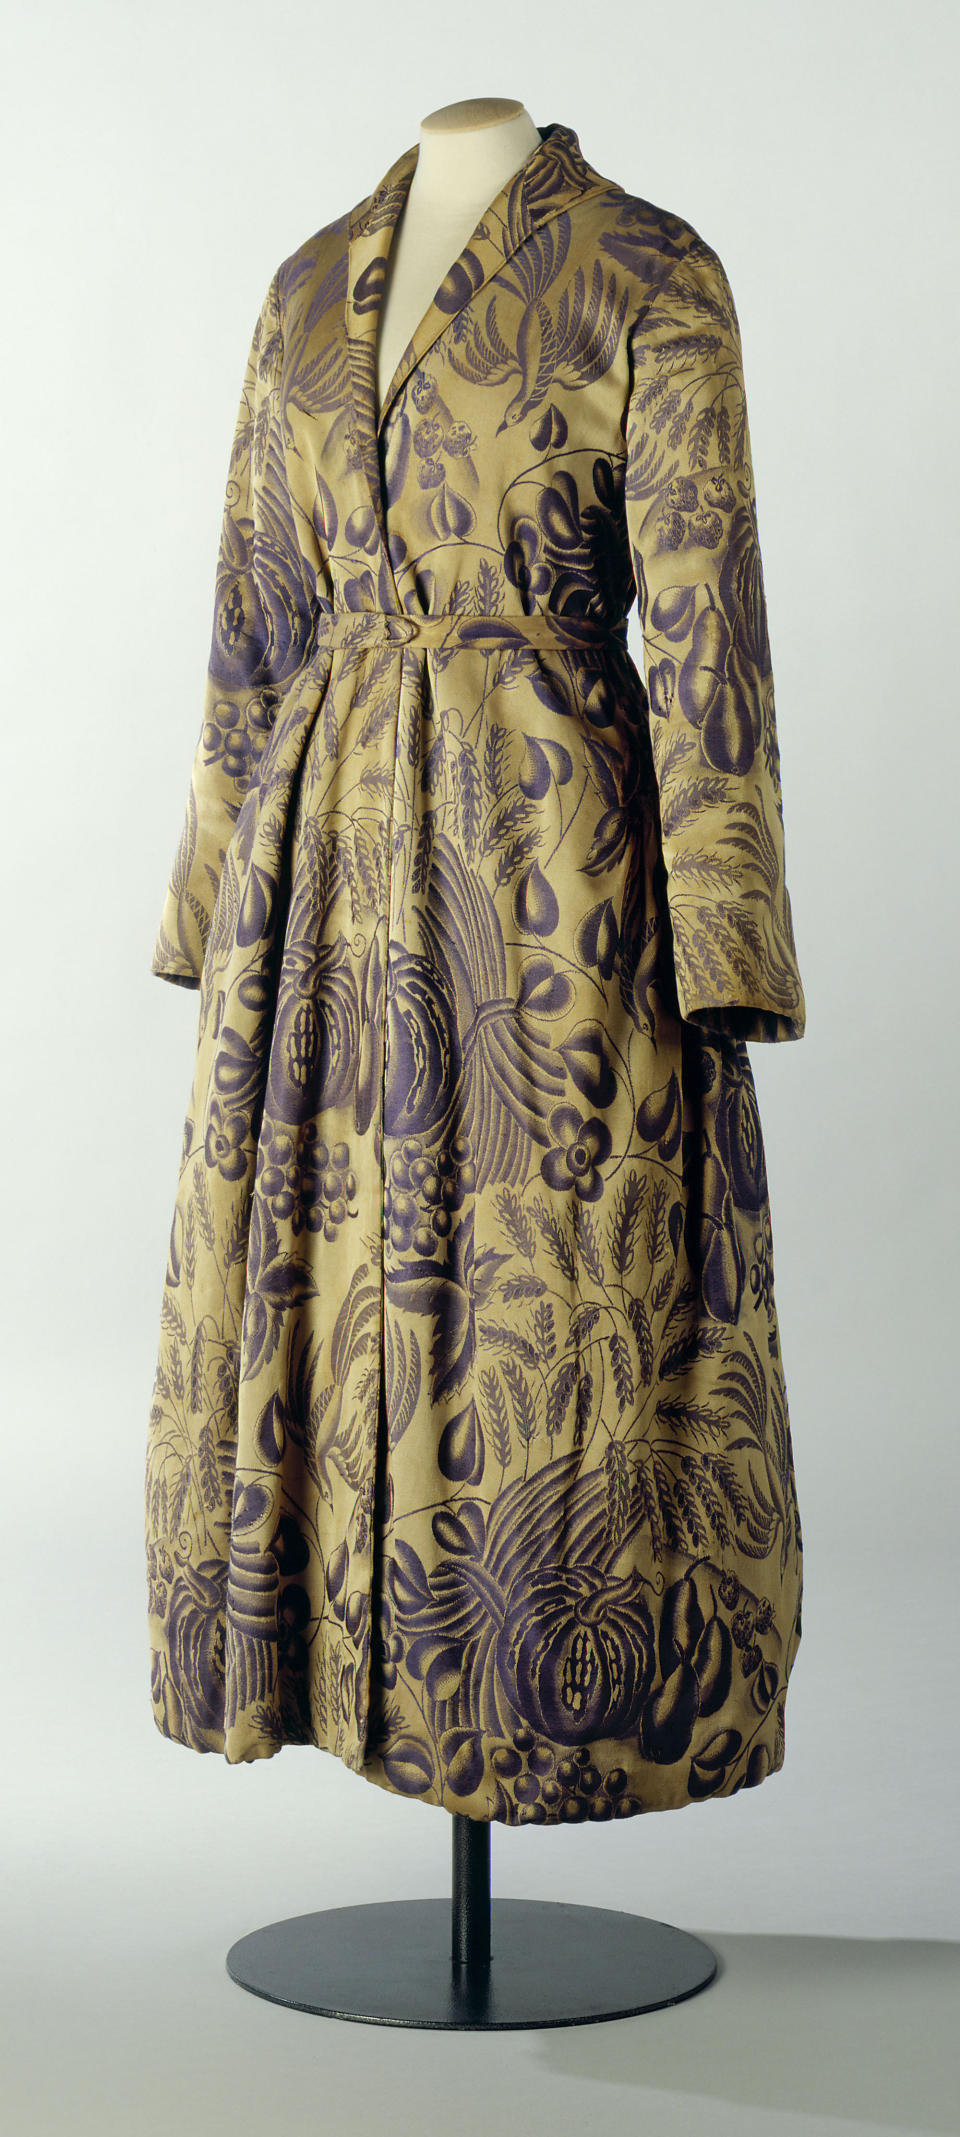 A dressing gown by Paul Poiret on display at the Musee de la Mode de la Ville de Paris at the Palais Galliera in Paris, late 20th century.&nbsp;